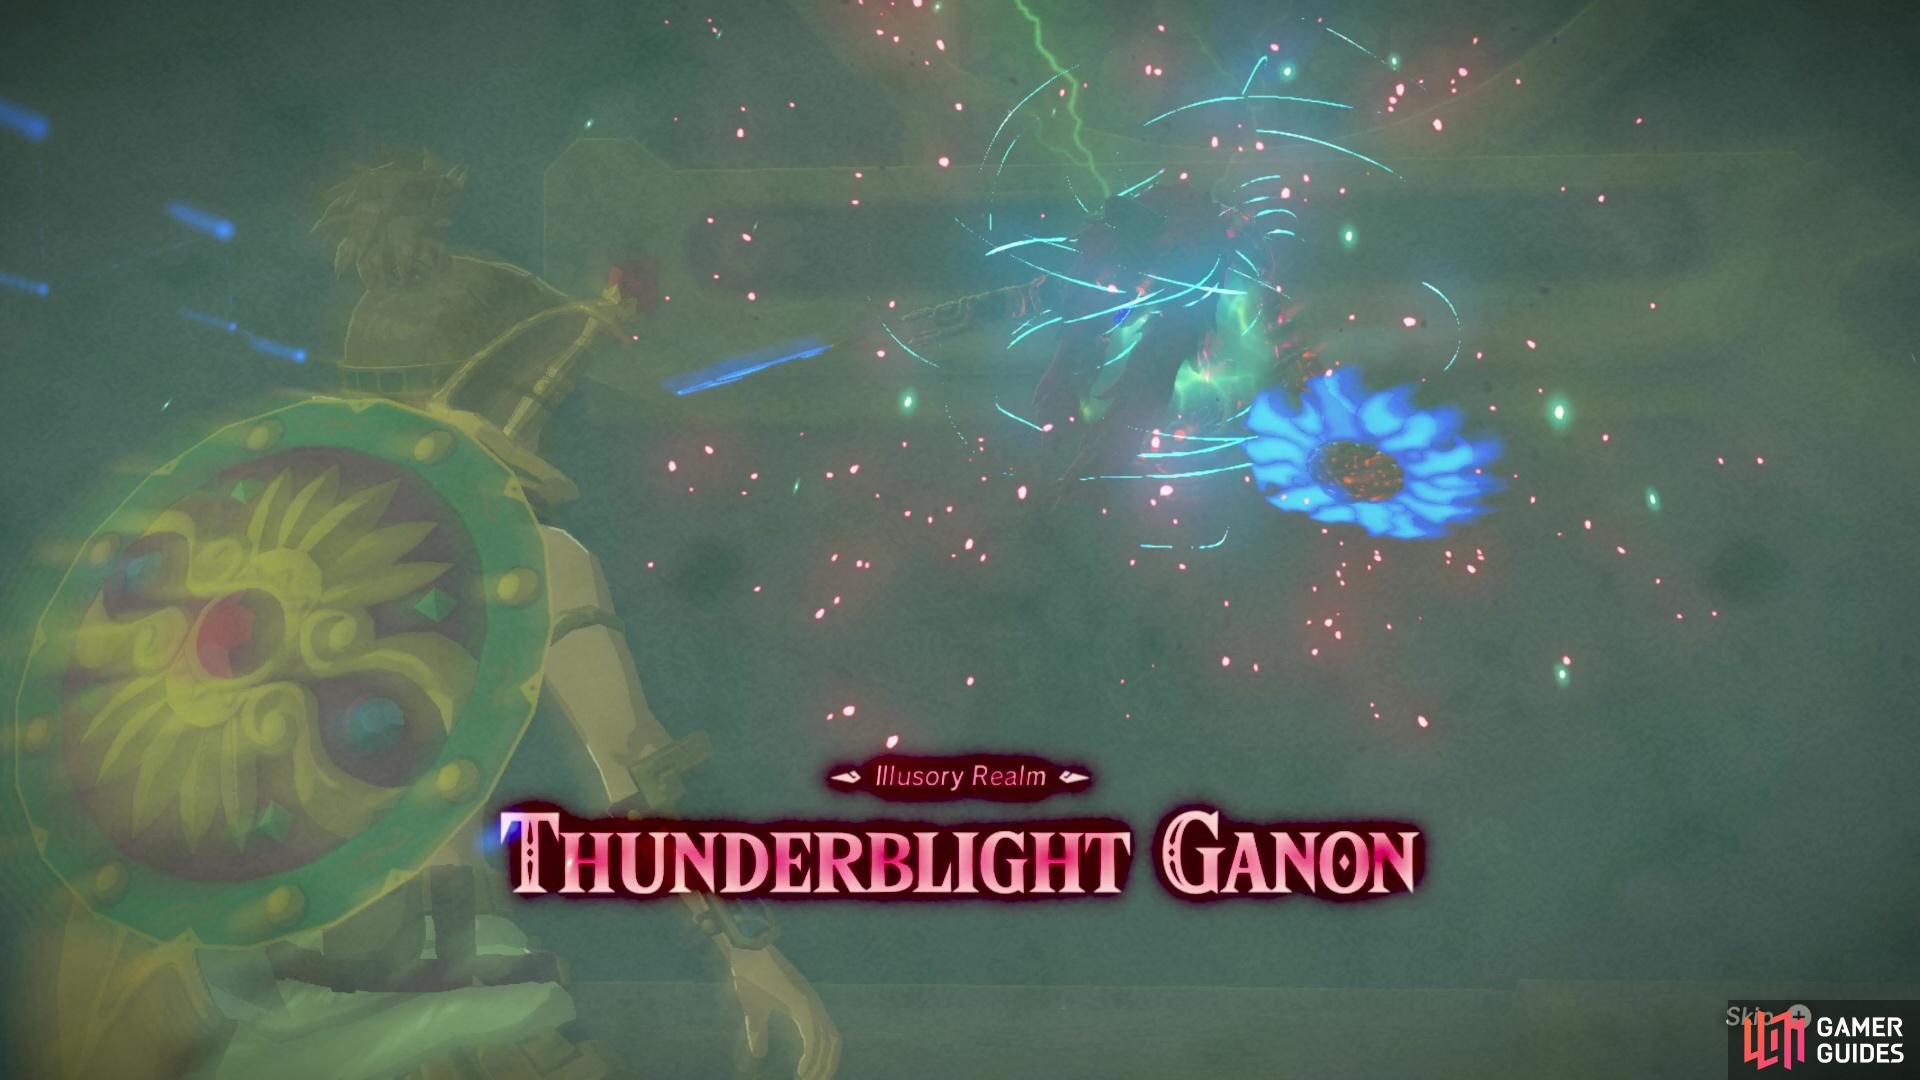 Welcome back Thunderblight Ganon!